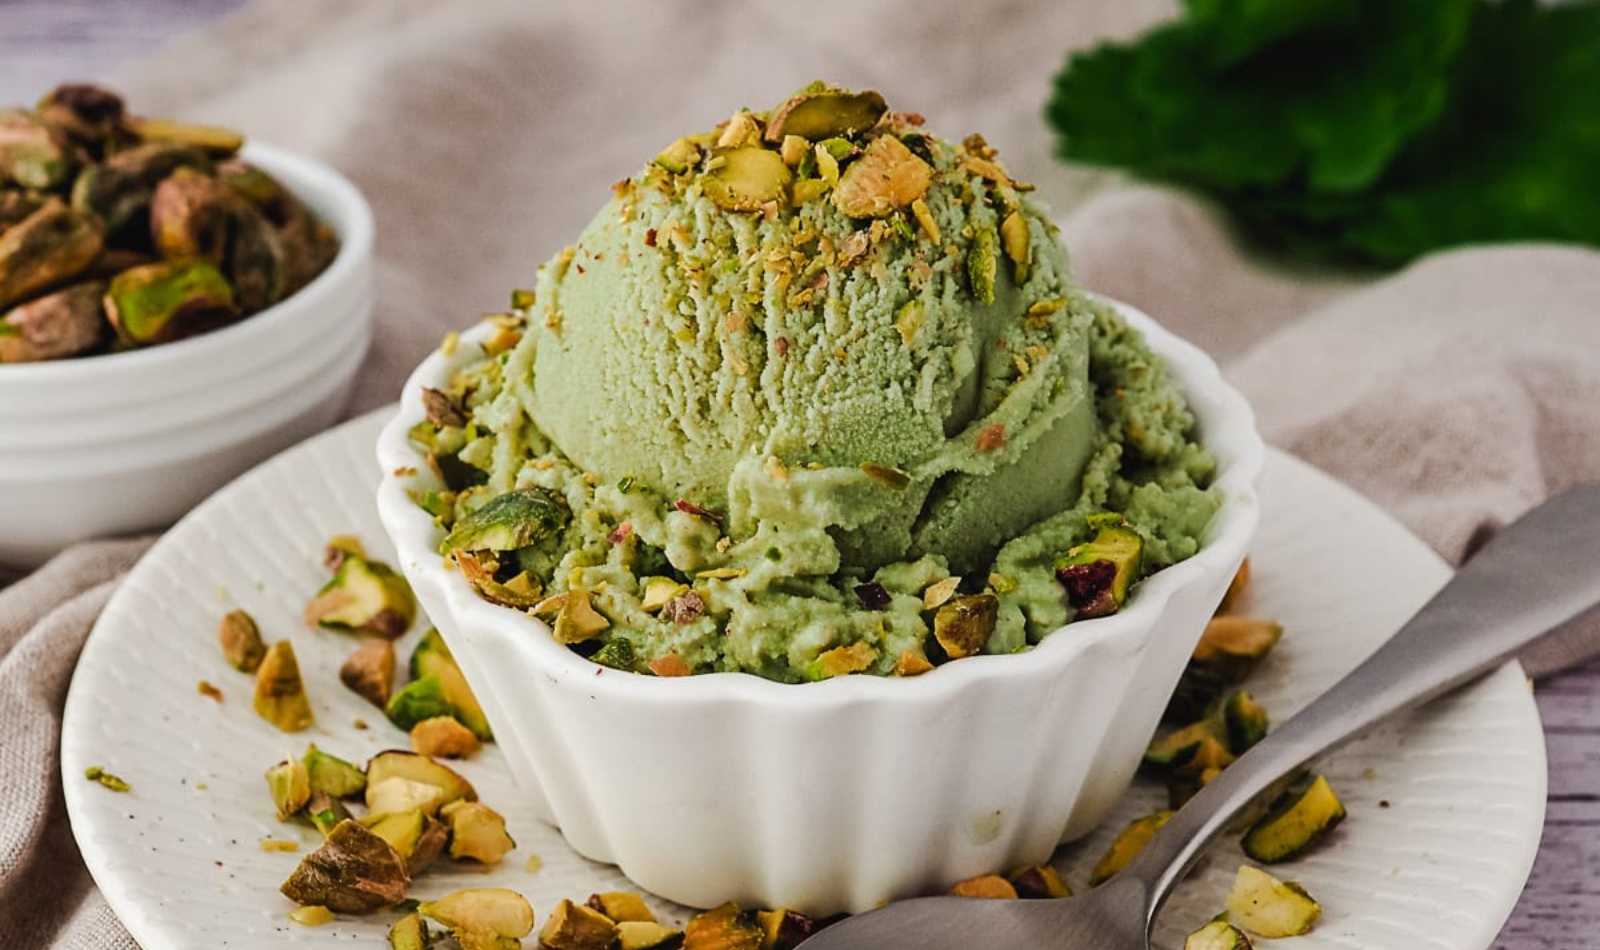 a bowl of pistachio ice cream